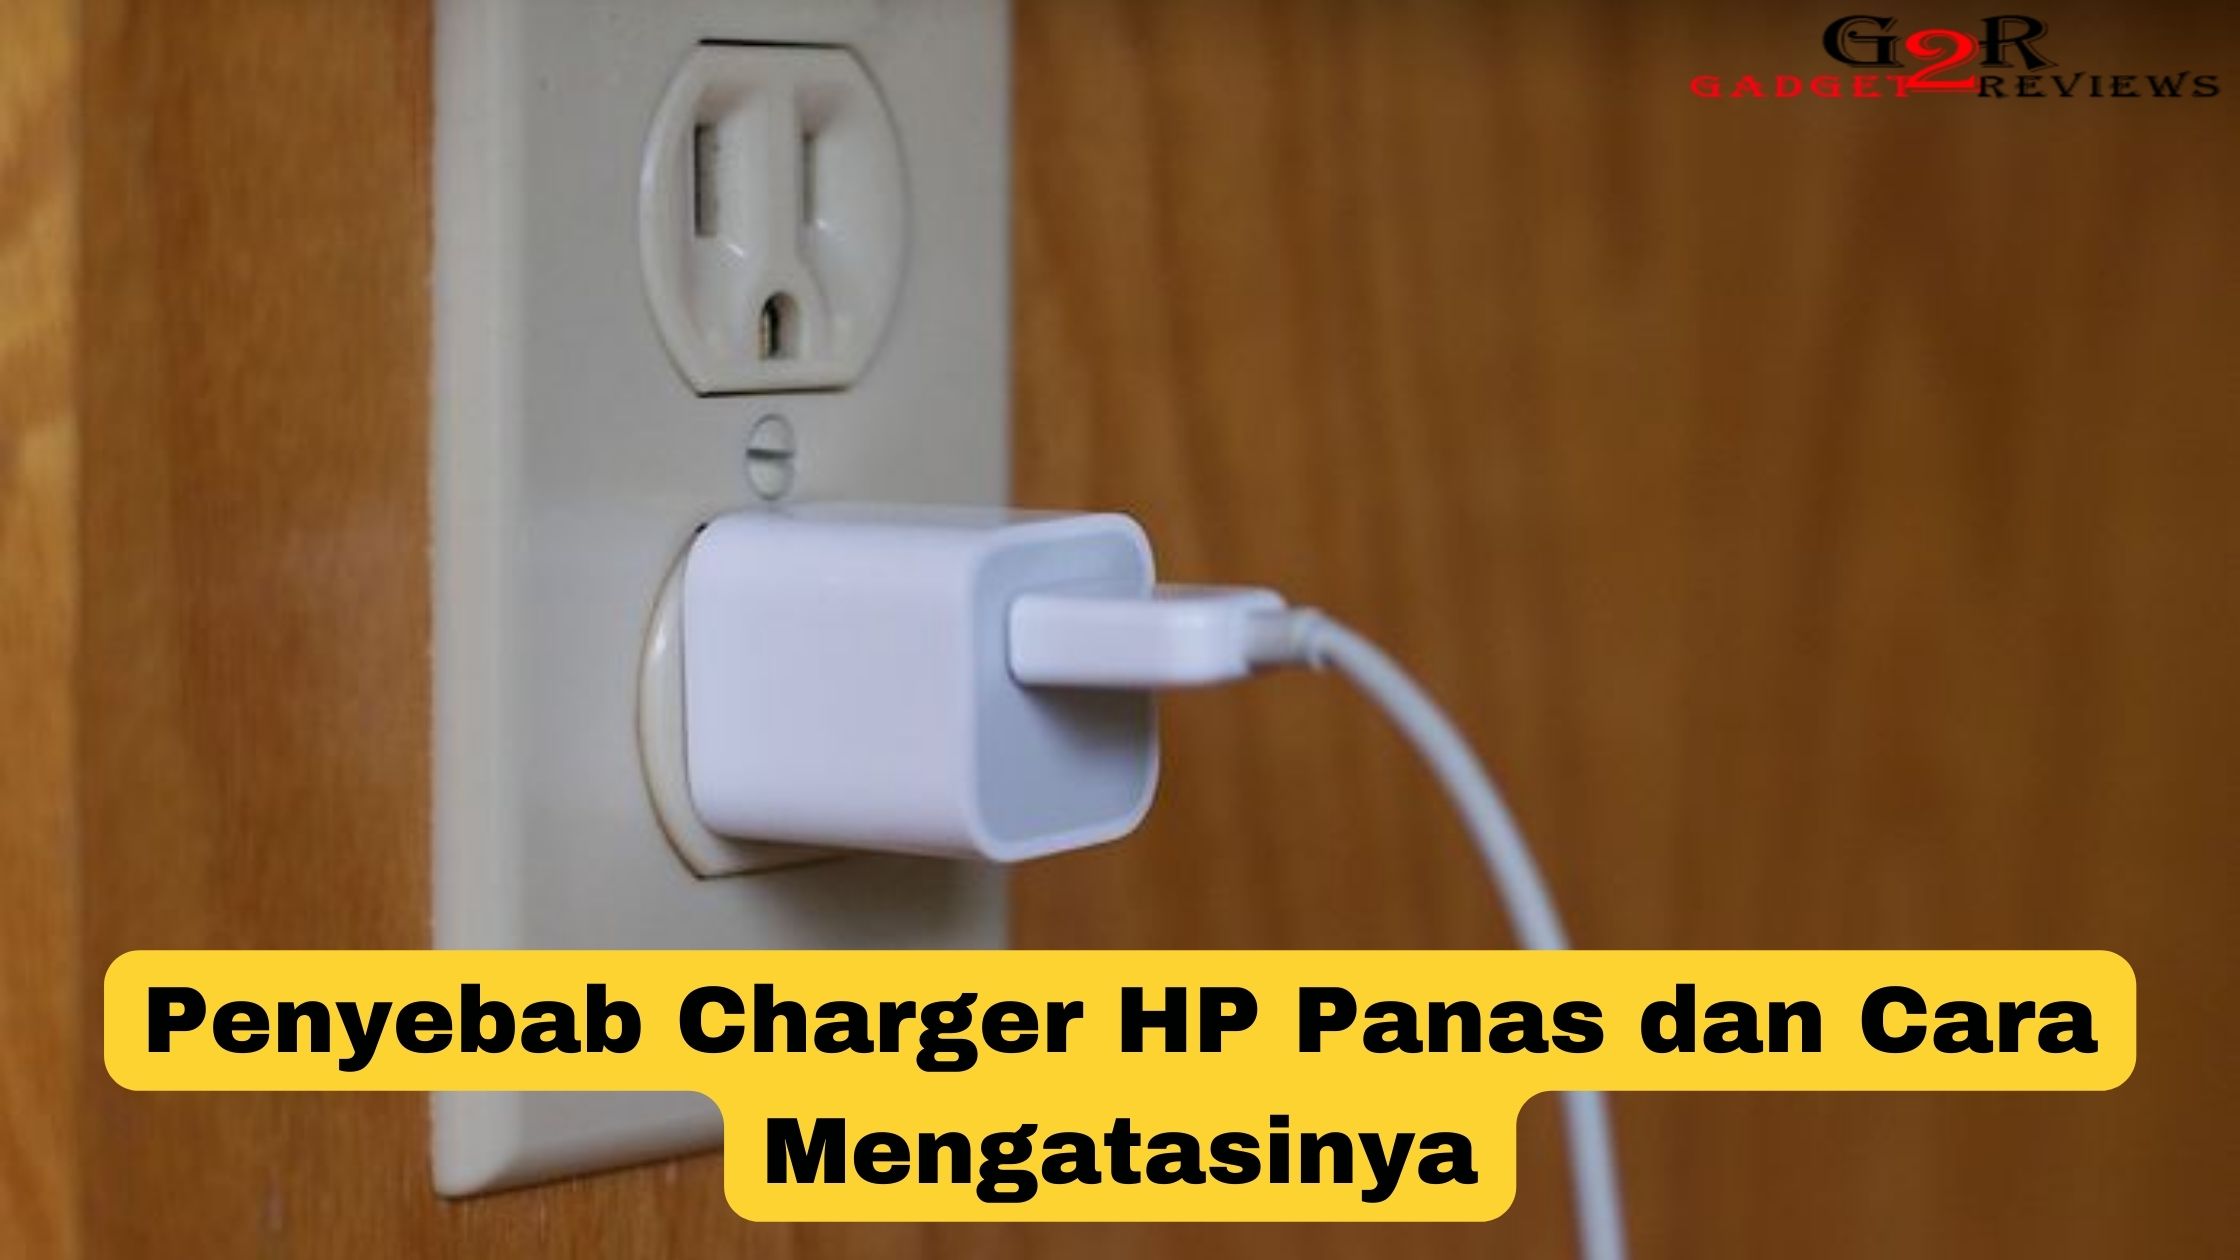 Penyebab Charger HP Panas